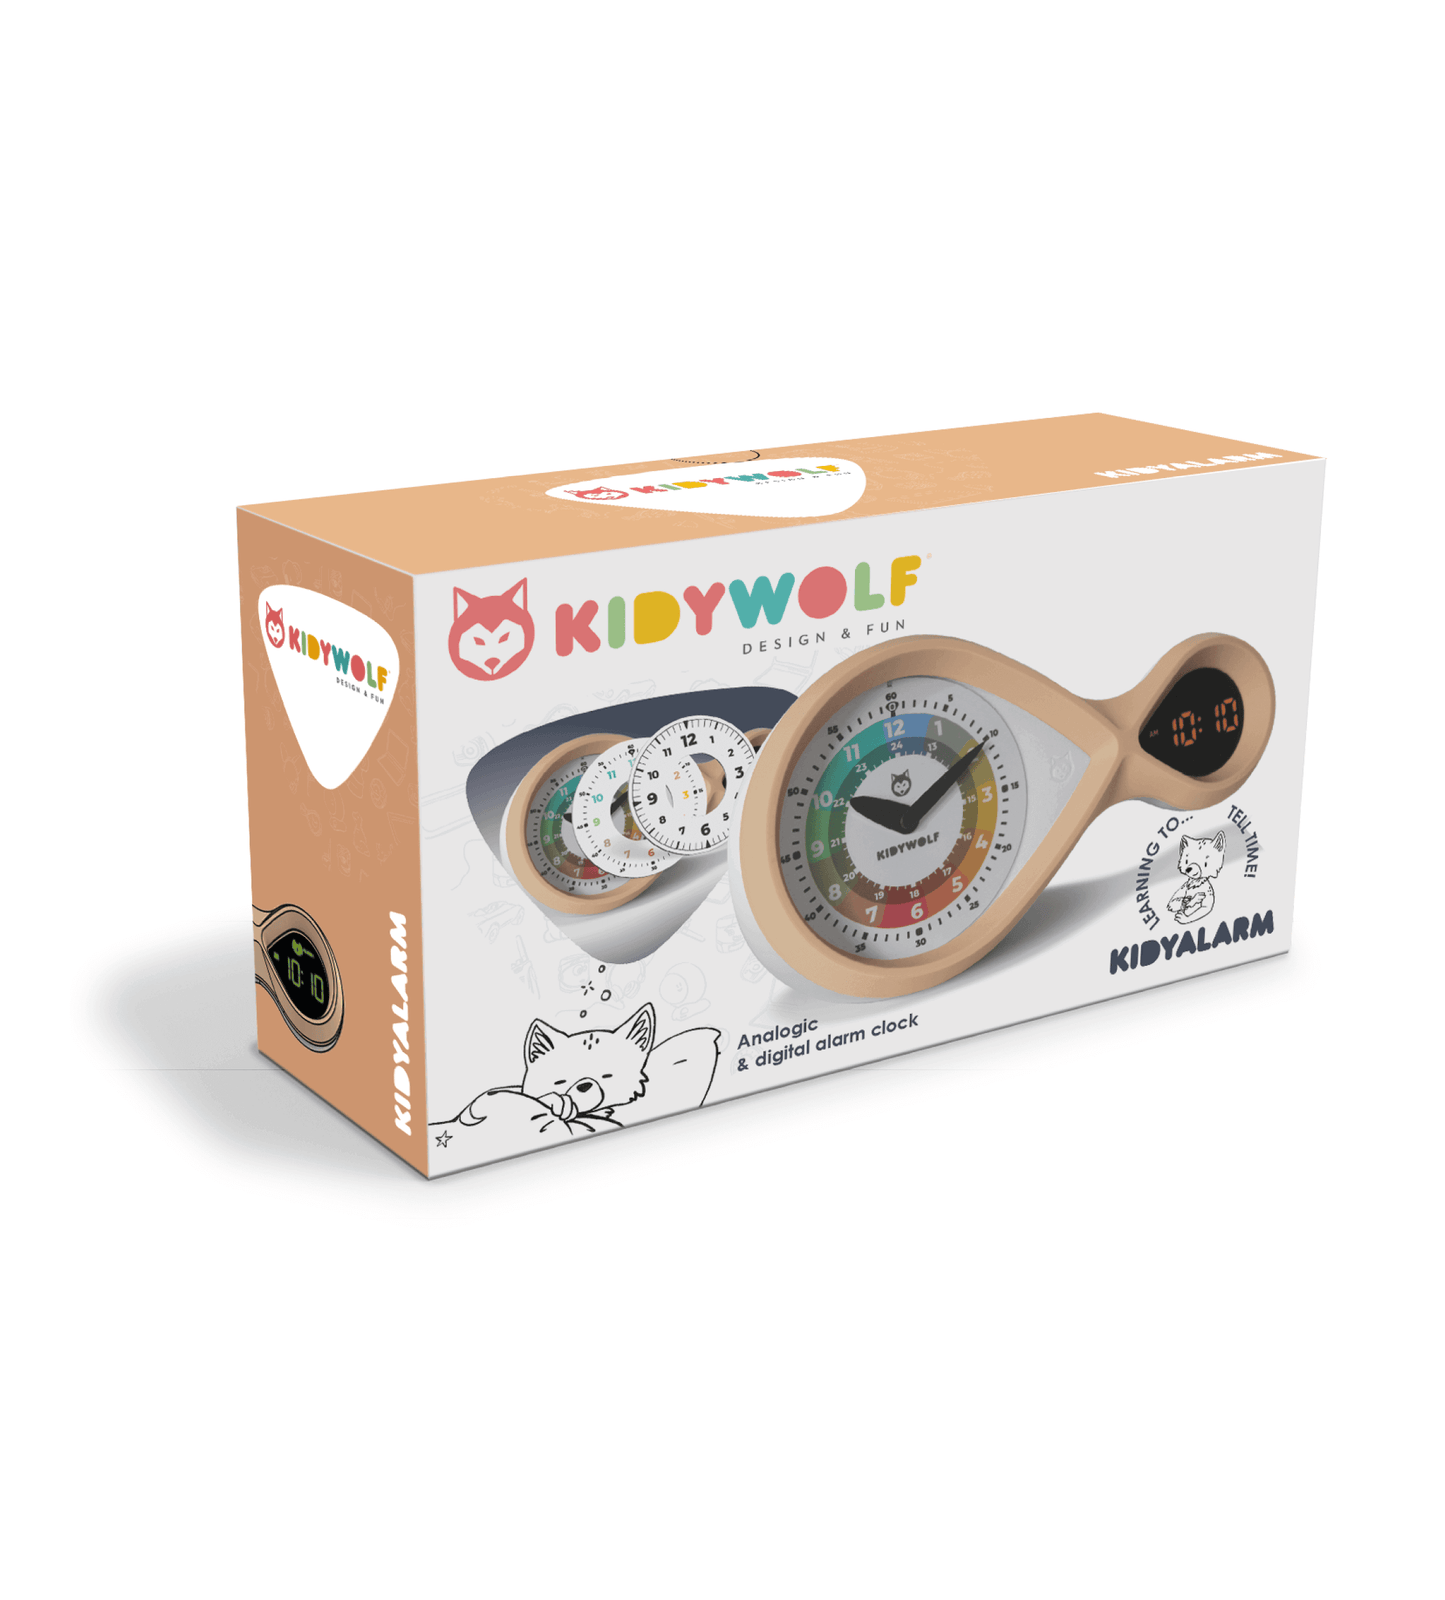 kidywolf kidyalarm bronze roze educatieve wekker kinderen kinderalam clock cadeau kerst kind verpakking